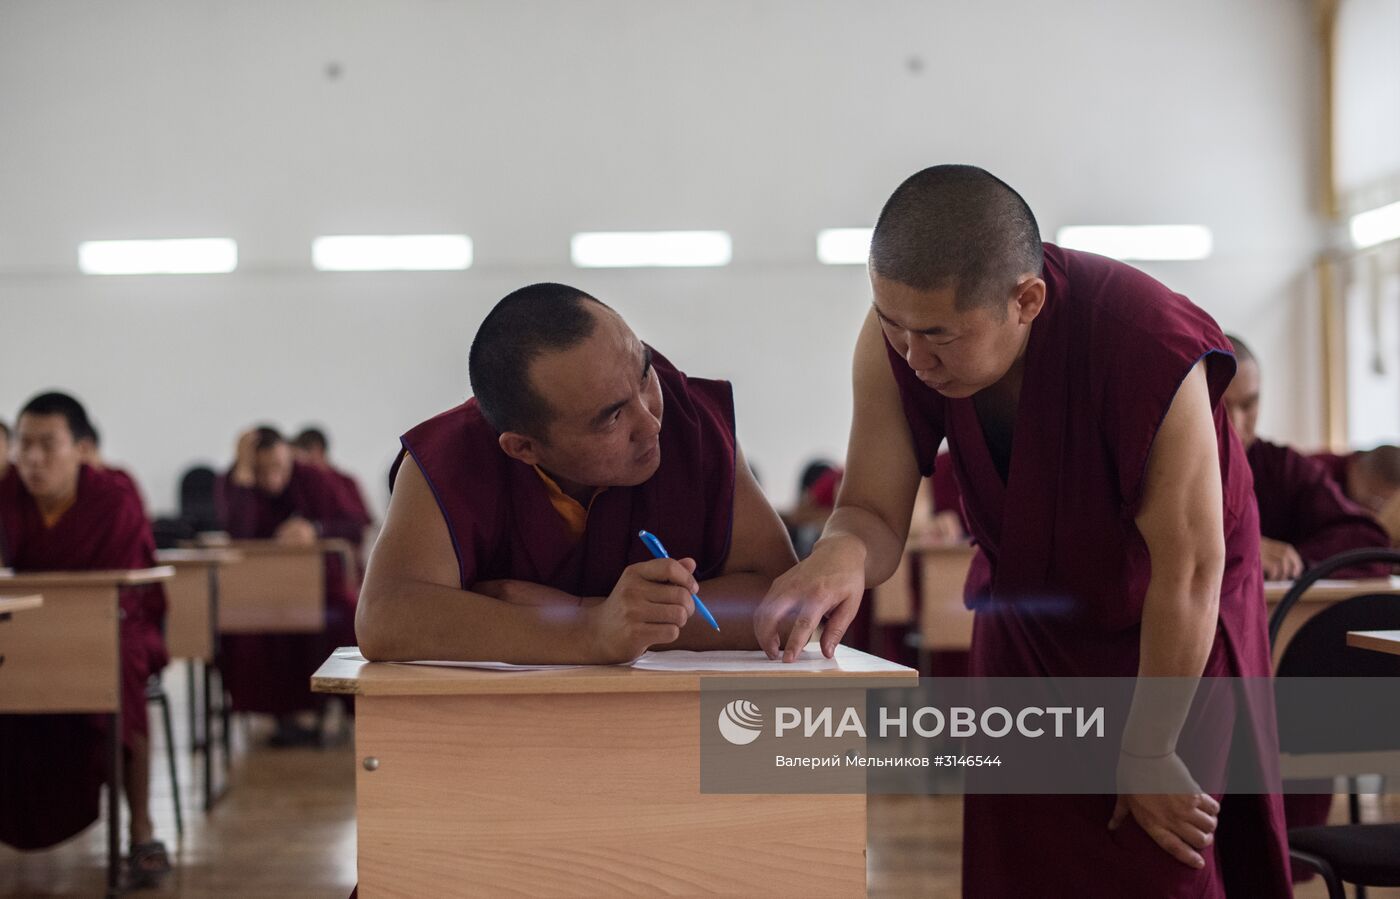 Буддийский университет "Даши Чойнхорлин" в Иволгинском дацане в Бурятии